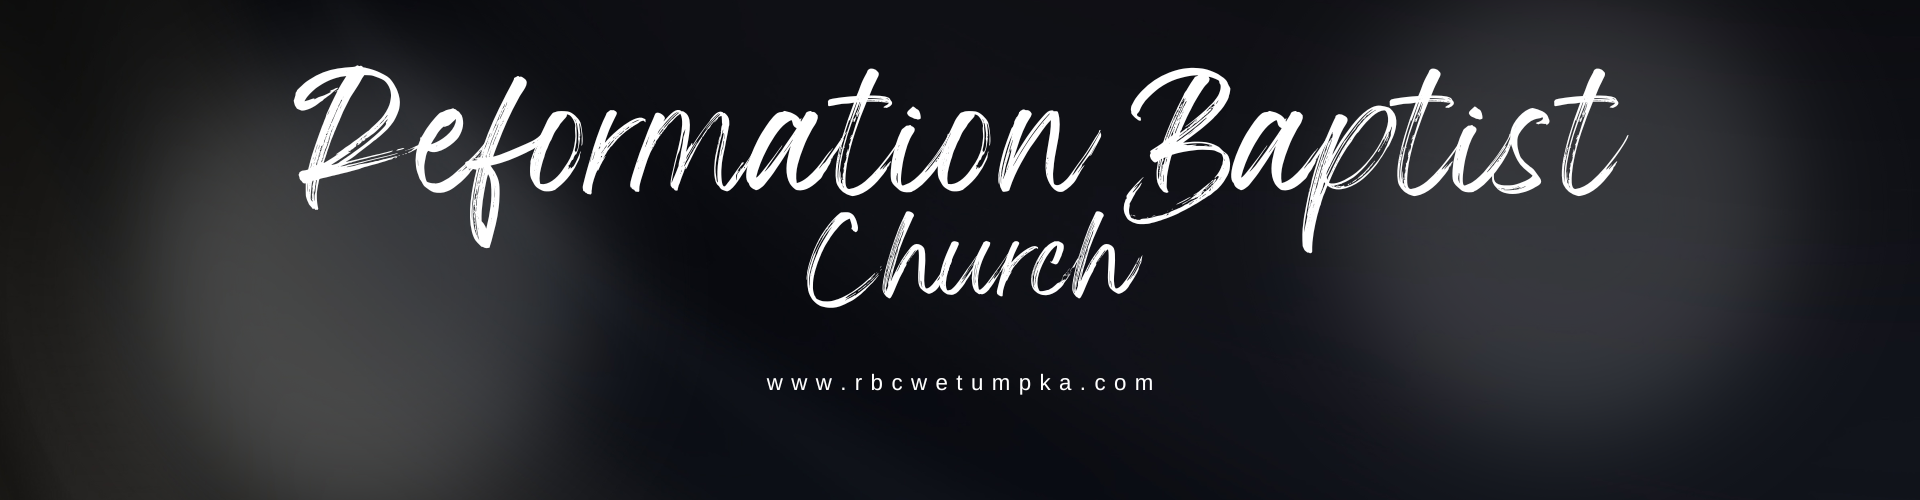 Reformation Baptist Church Wetumpka